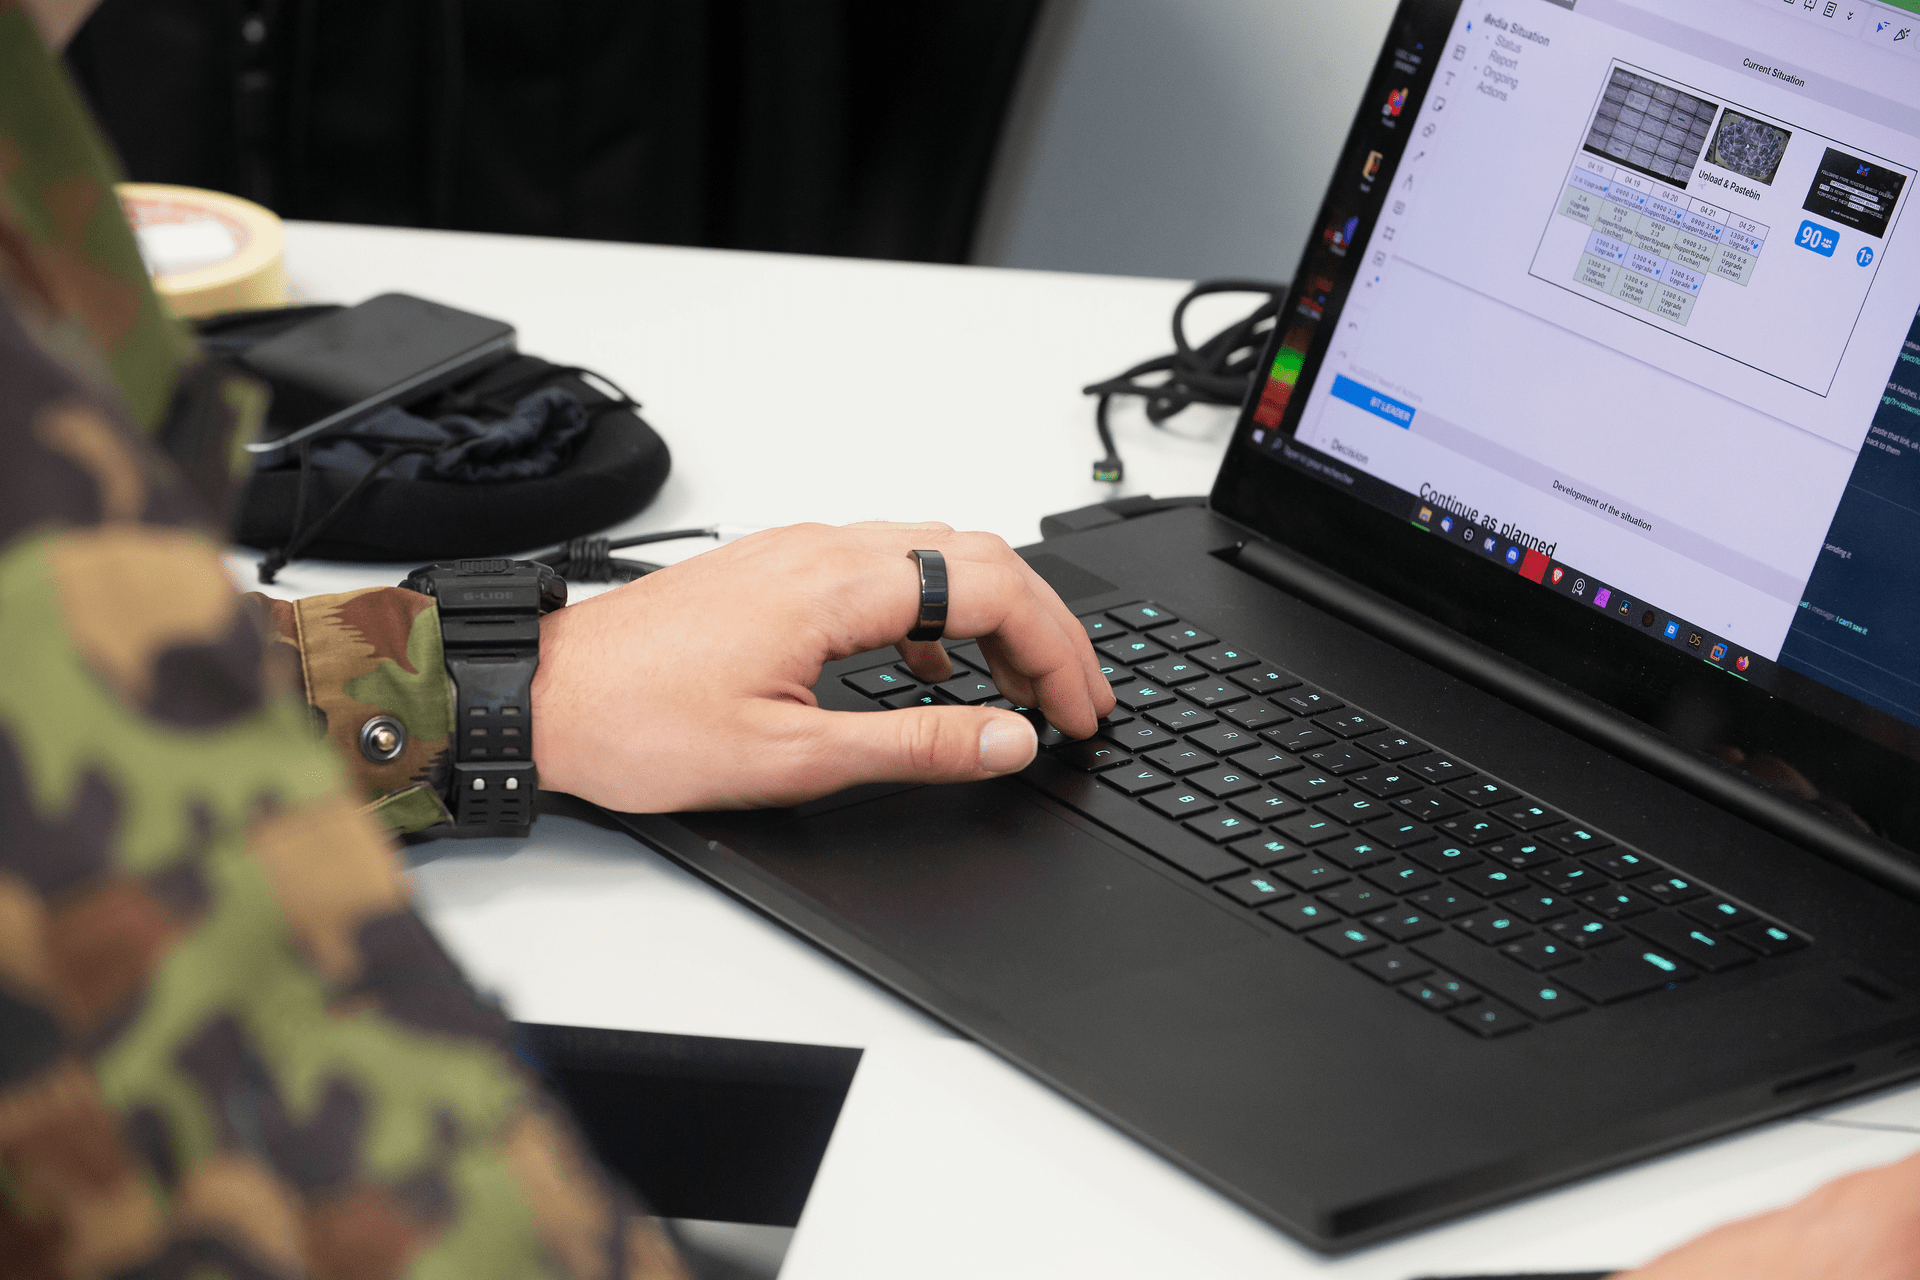 Dvadesetak pripadnika bataljuna "cyber 42", polaznika tečaja obuke Schweizer Armee, i pripadnika milicije specijaliziranog Glavnog stožera, zajedno sa stručnjacima iz Army Conduct Support Base (BAC), intenzivno se pripremalo za scenarij međunarodne vježbe Locked Shields, koju je organizirao Cooperative Cyber ​​​​Defence Center of Excellence u Tallinnu.